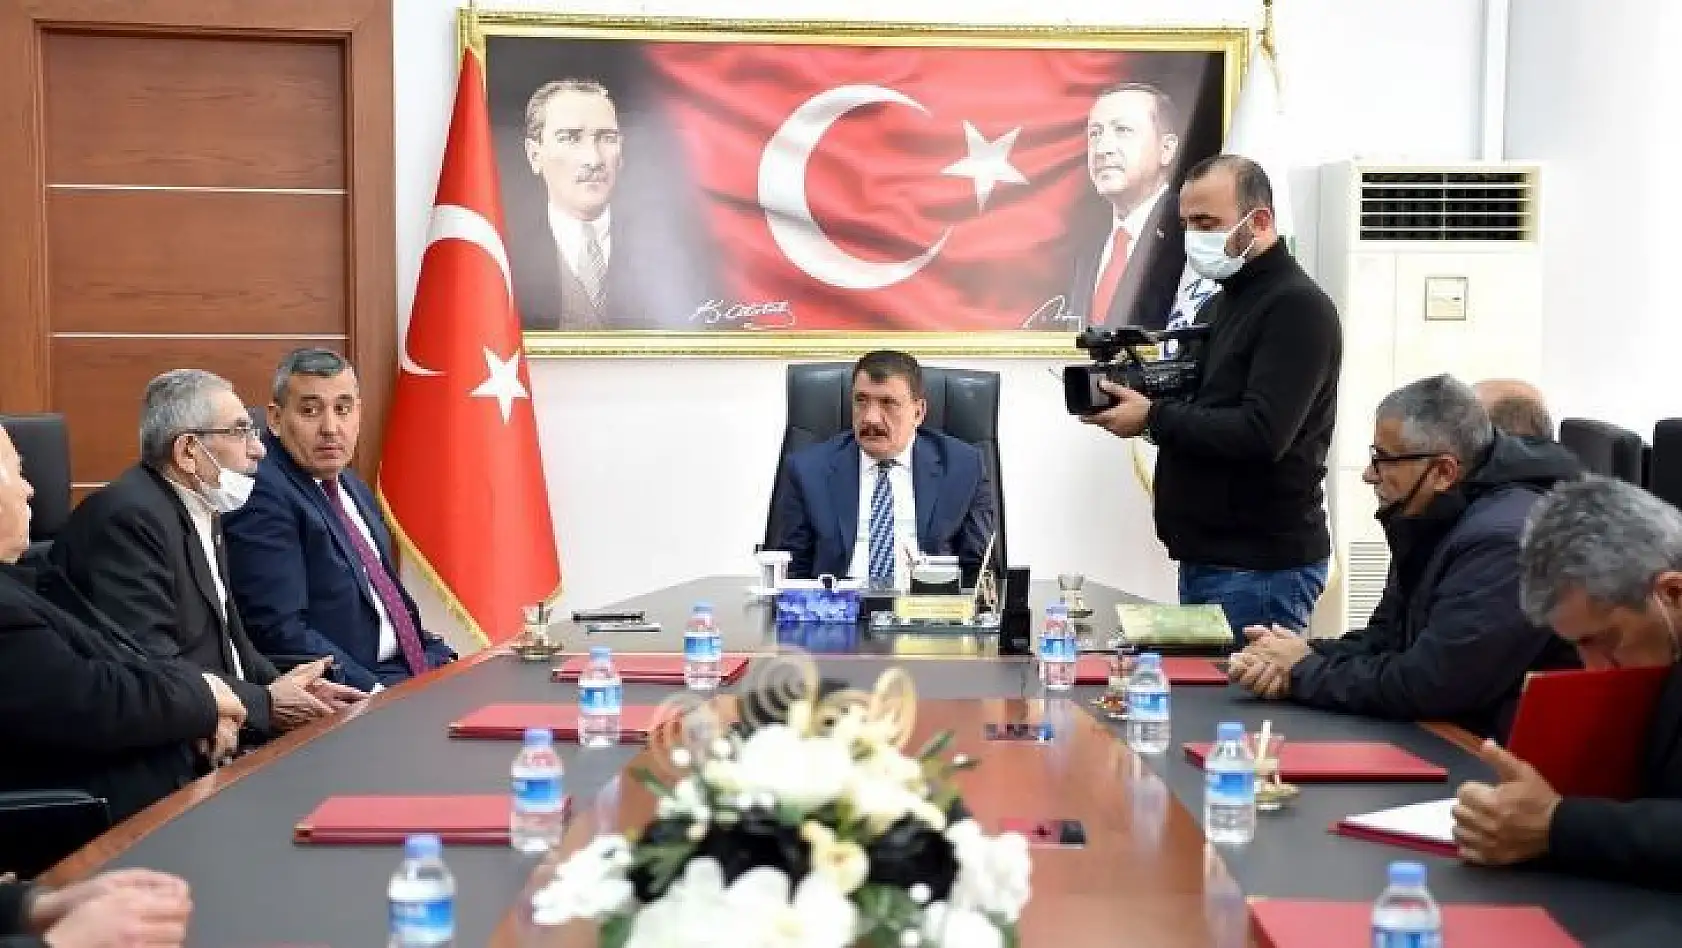 Başkan Gürkan, muhtarları kabul etti